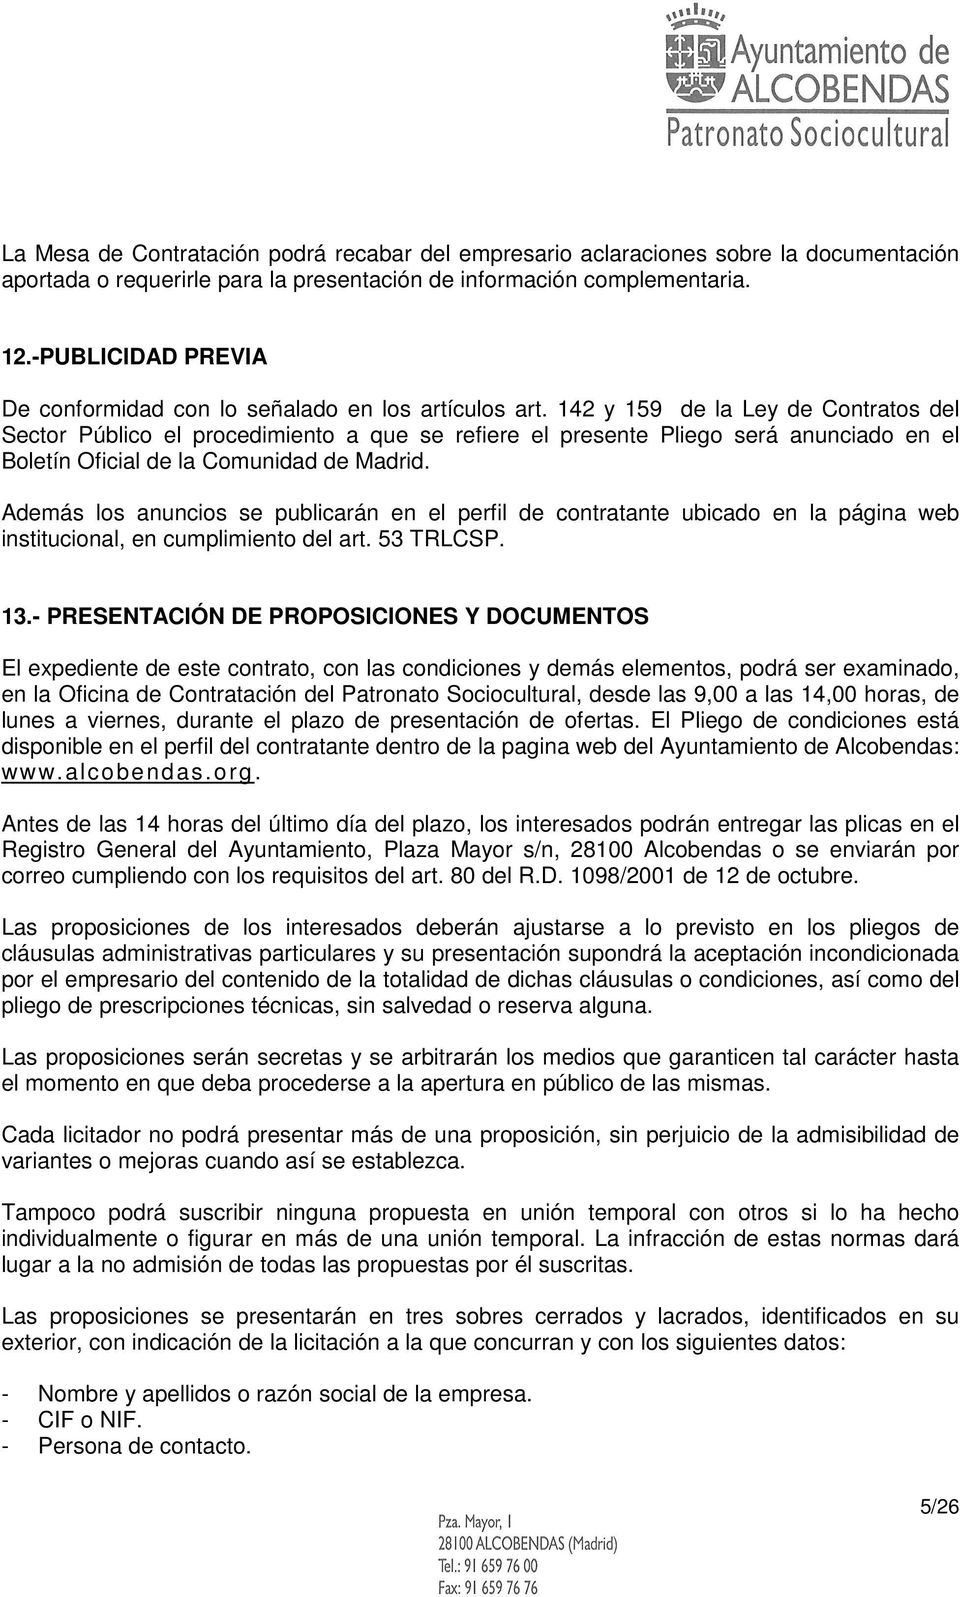 142 y 159 de la Ley de Contratos del Sector Público el procedimiento a que se refiere el presente Pliego será anunciado en el Boletín Oficial de la Comunidad de Madrid.